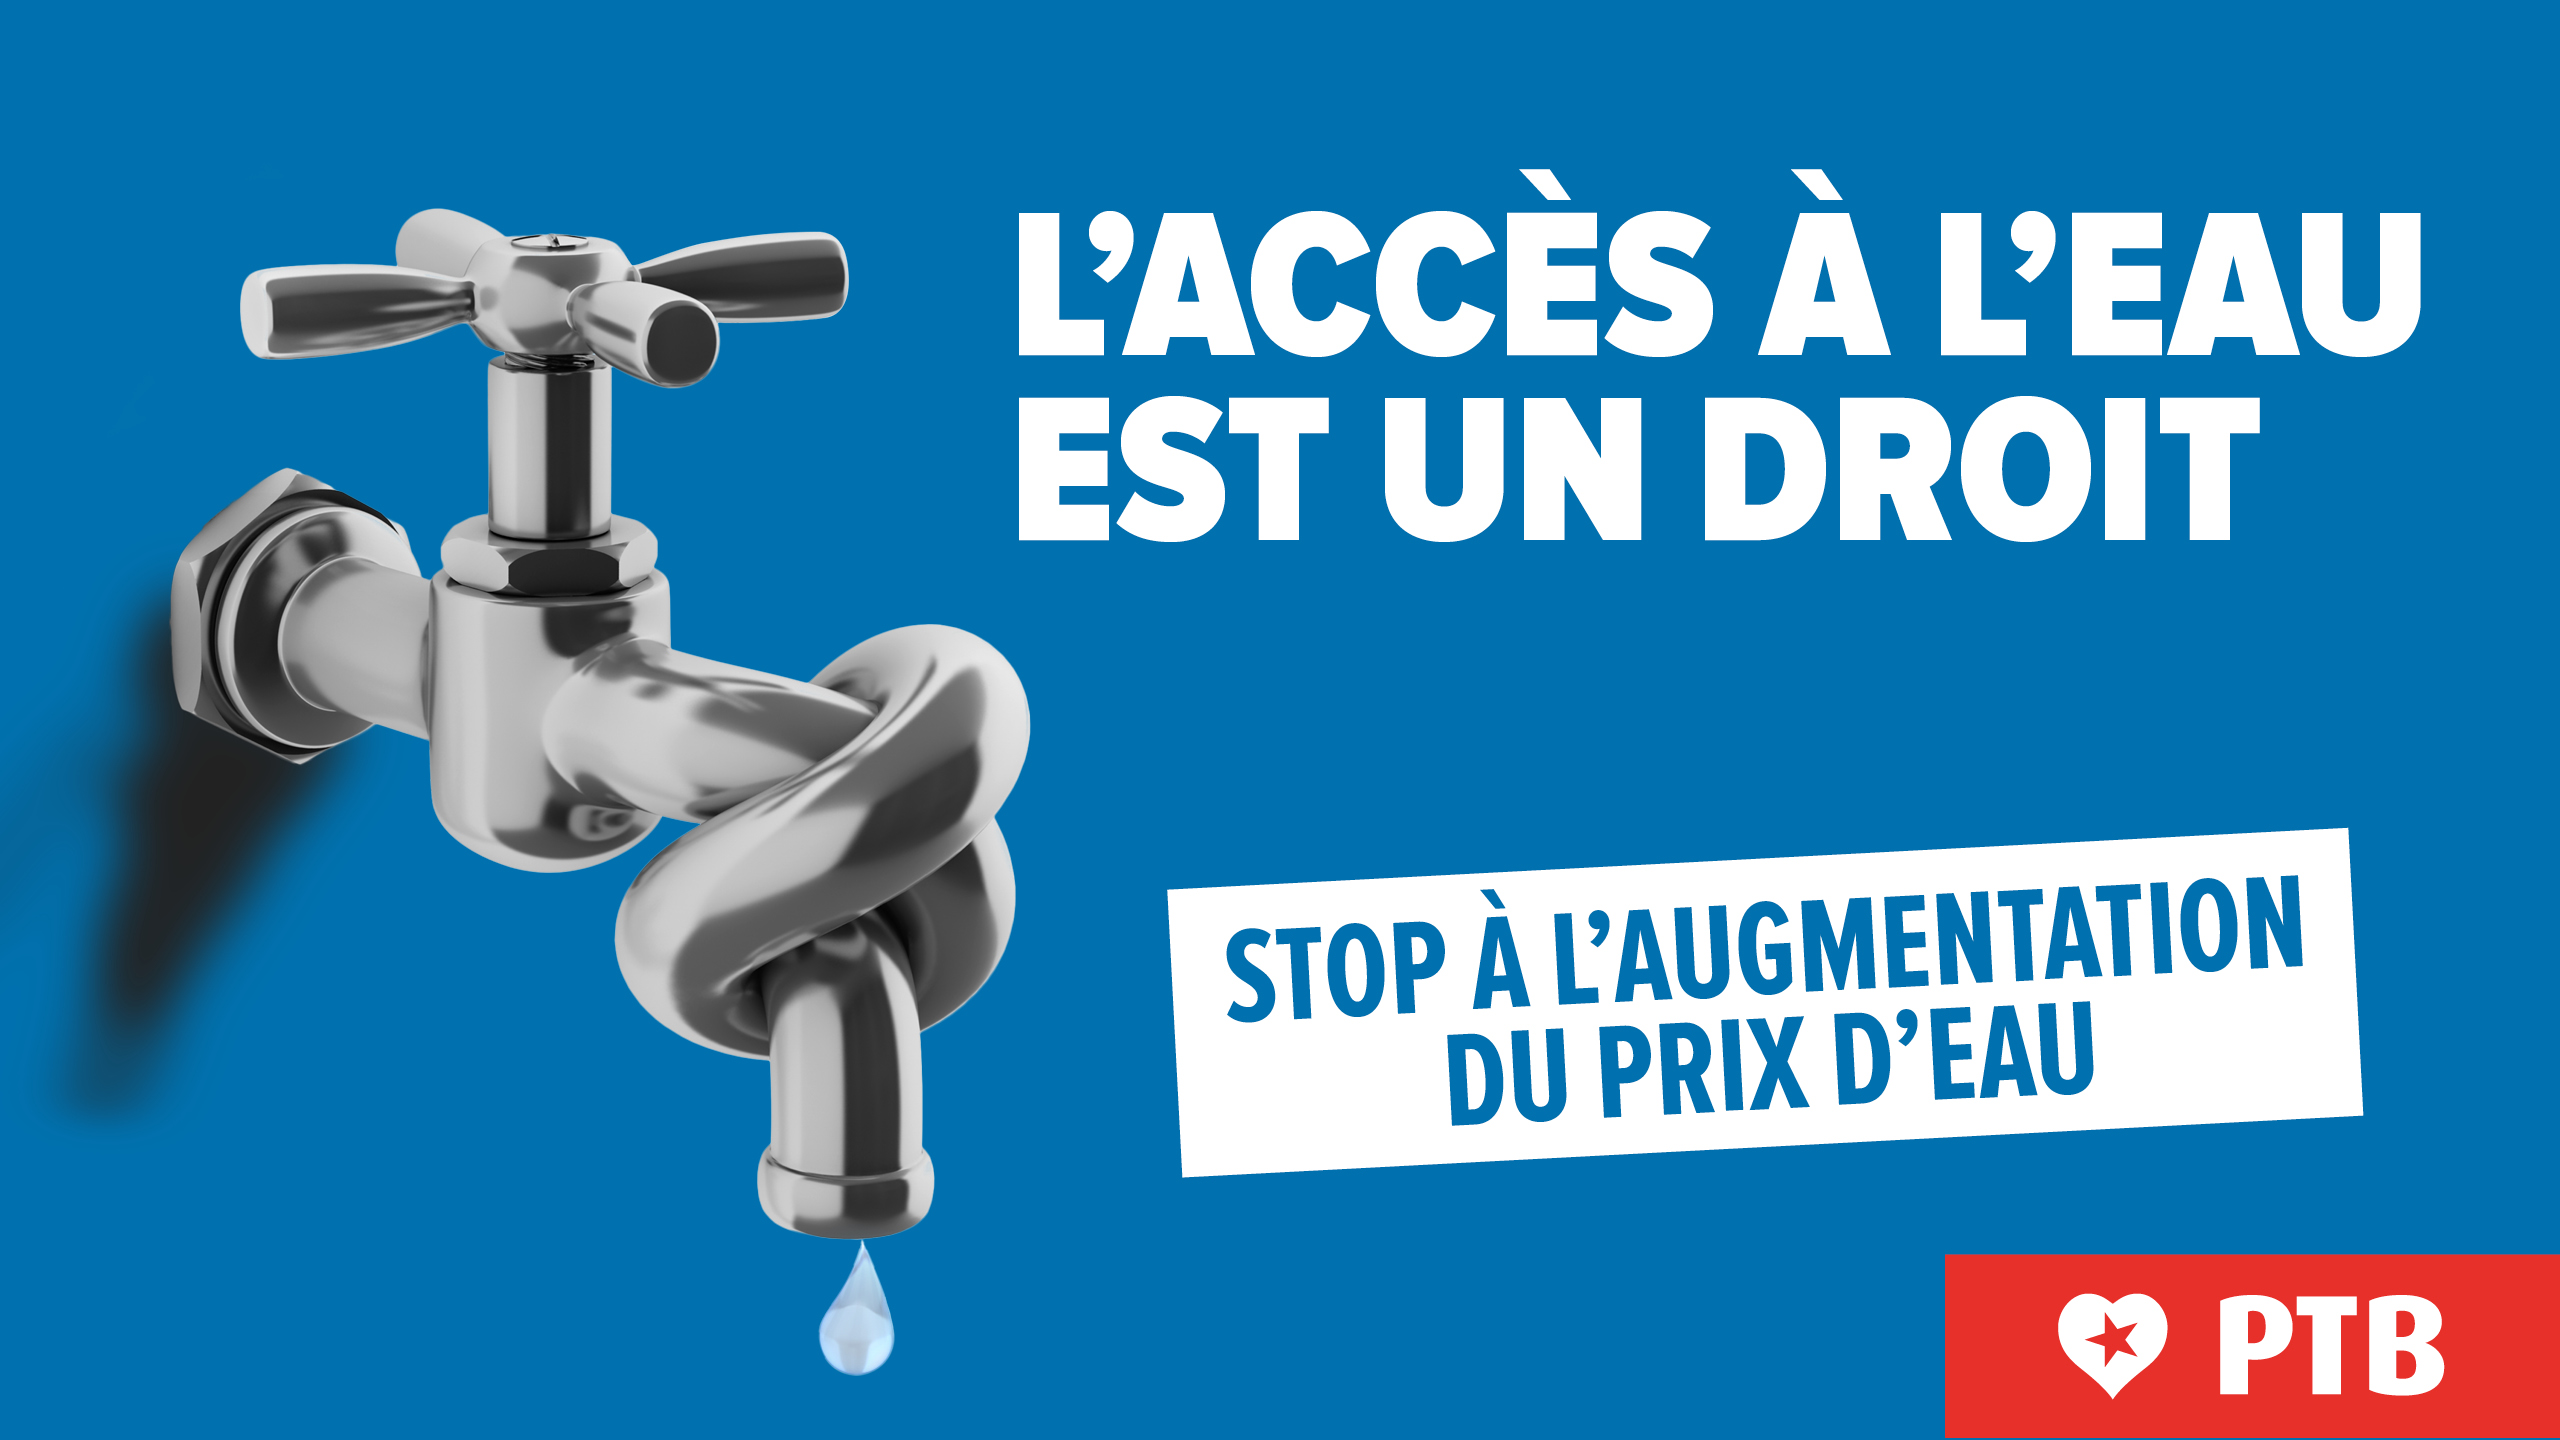 “Le prix de l'eau doit rester une décision politique” : le PTB s’oppose à cette augmentation antisociale